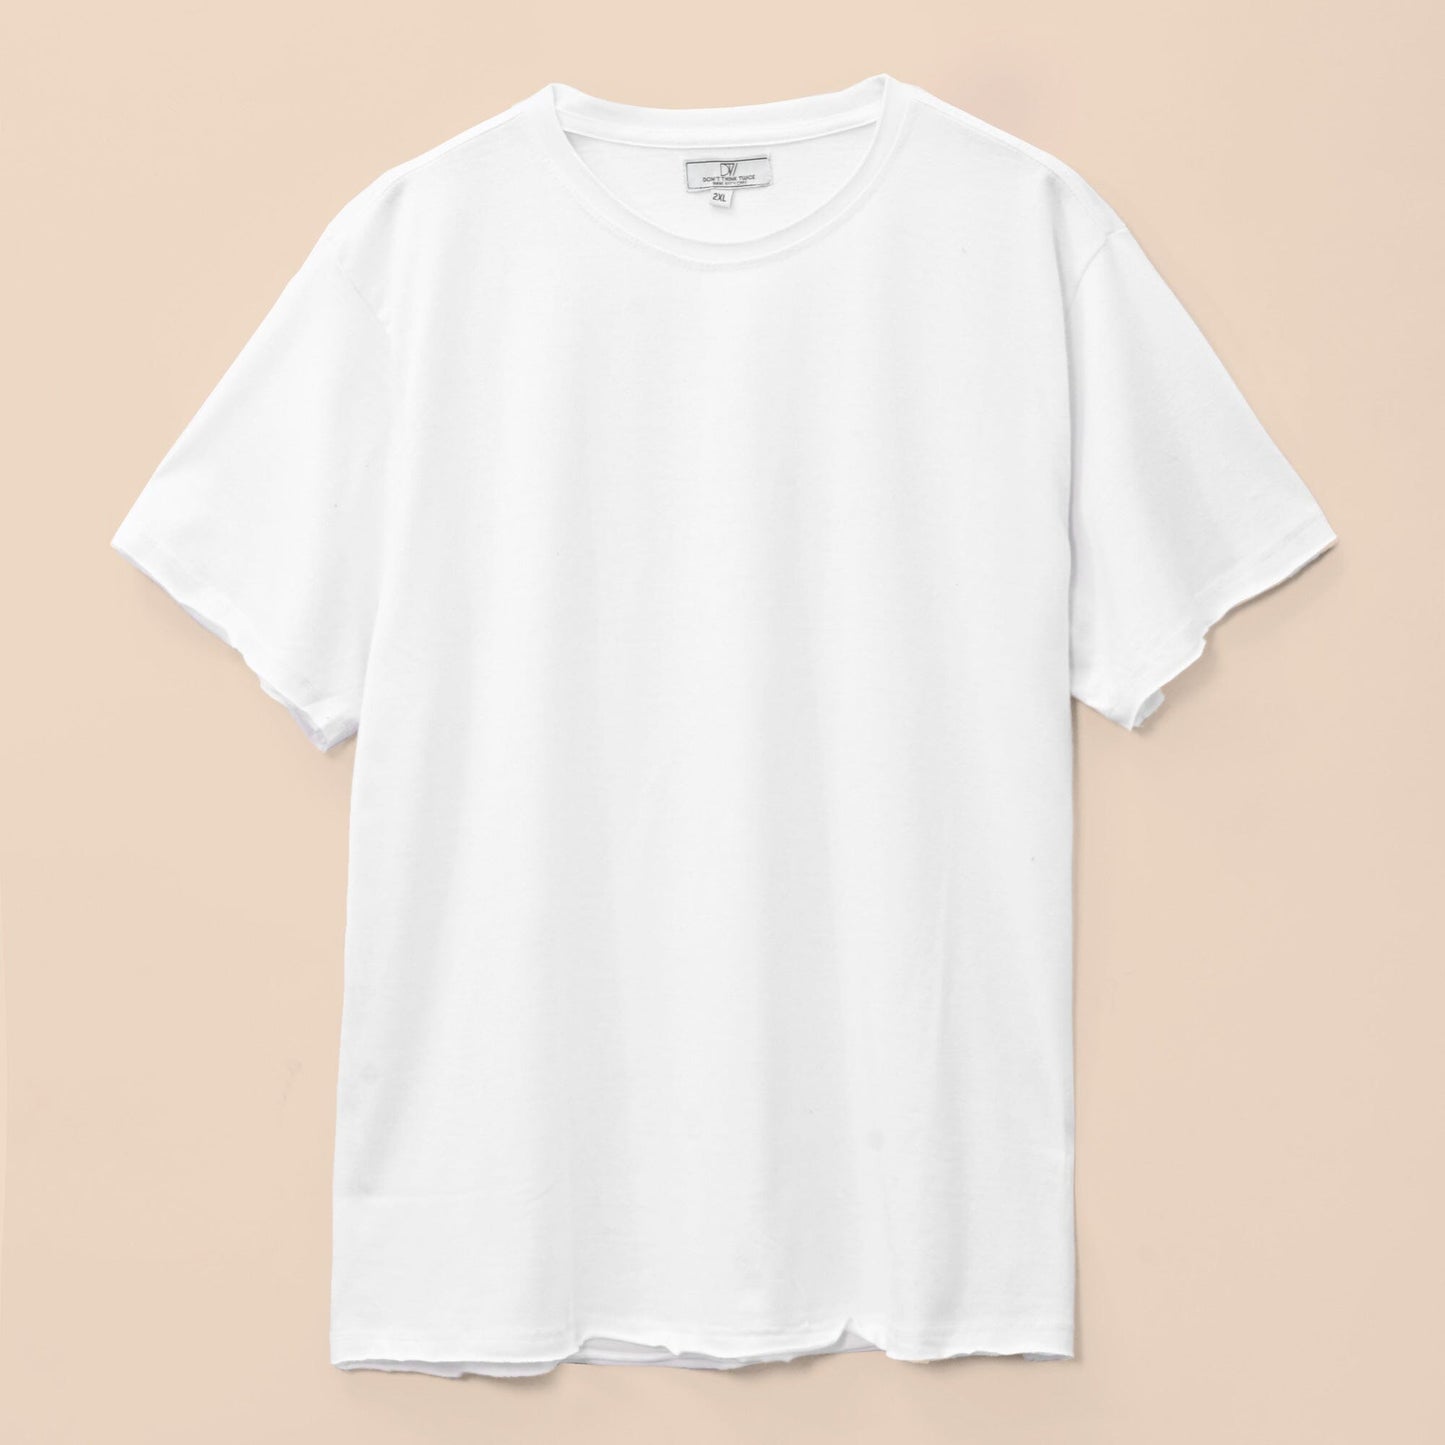 DT Men's Solid Design Short Sleeve Tee Shirt Men's Tee Shirt SZK White 2XL 